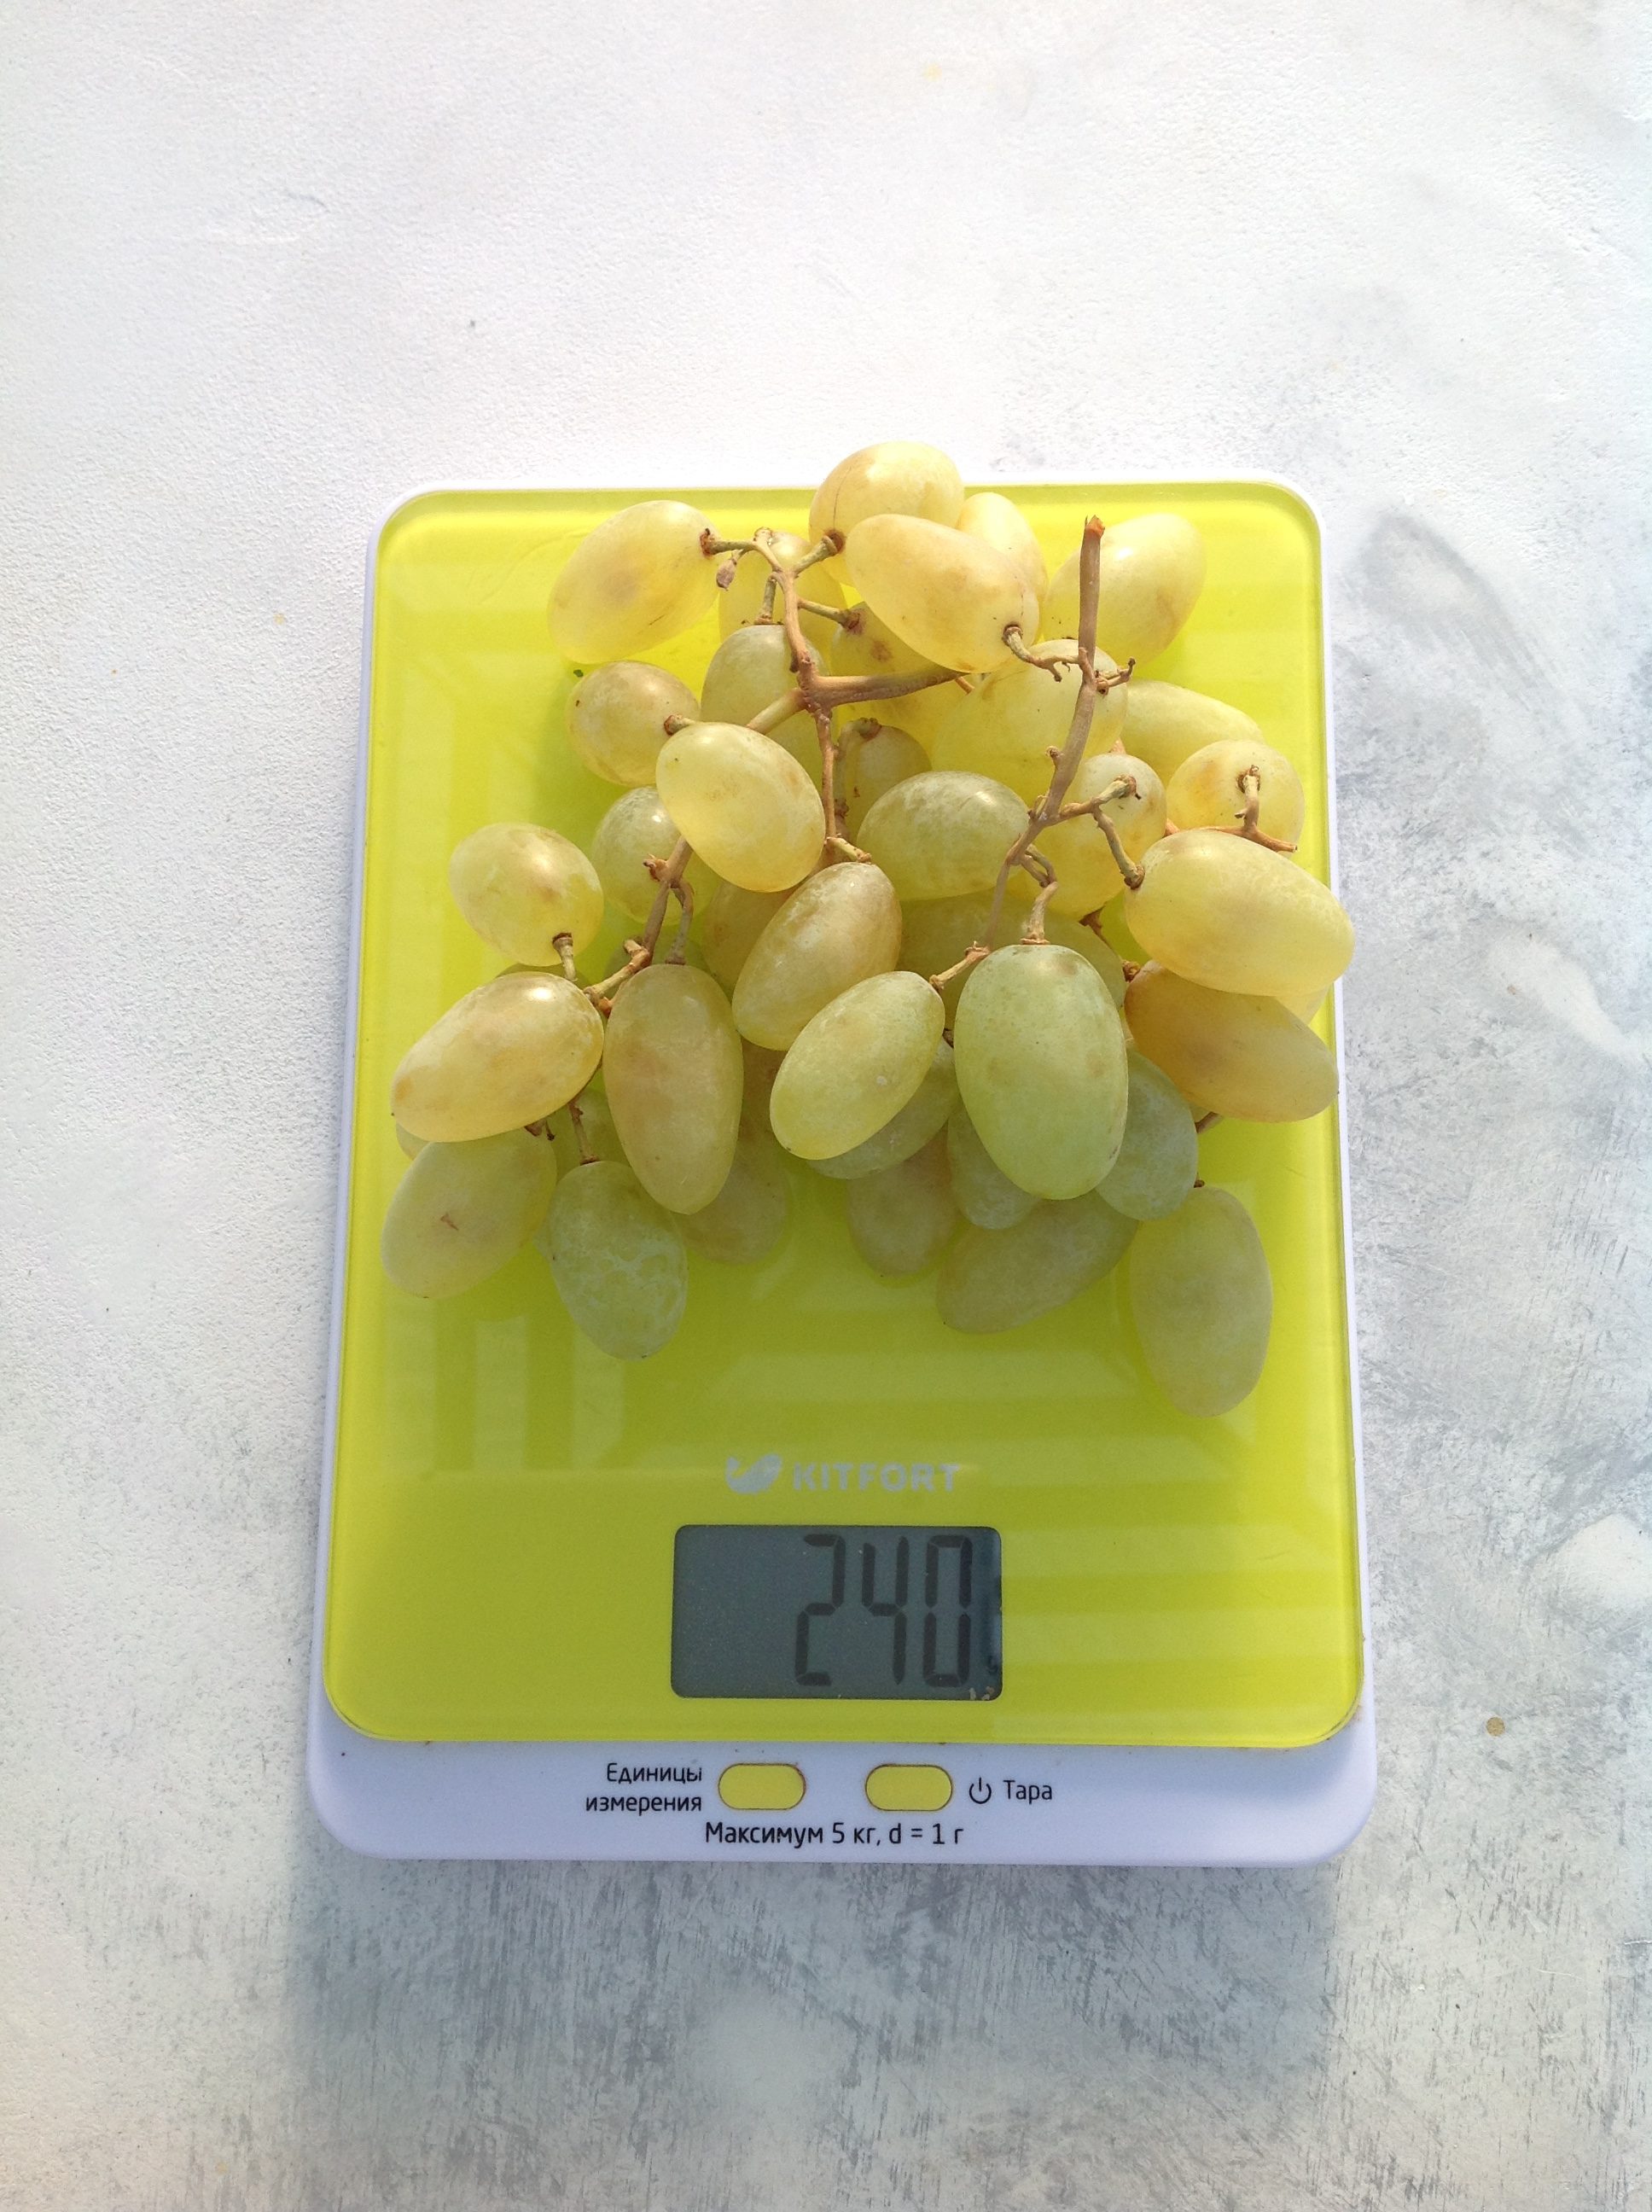 vidutinis baltųjų vynuogių šakelės svoris